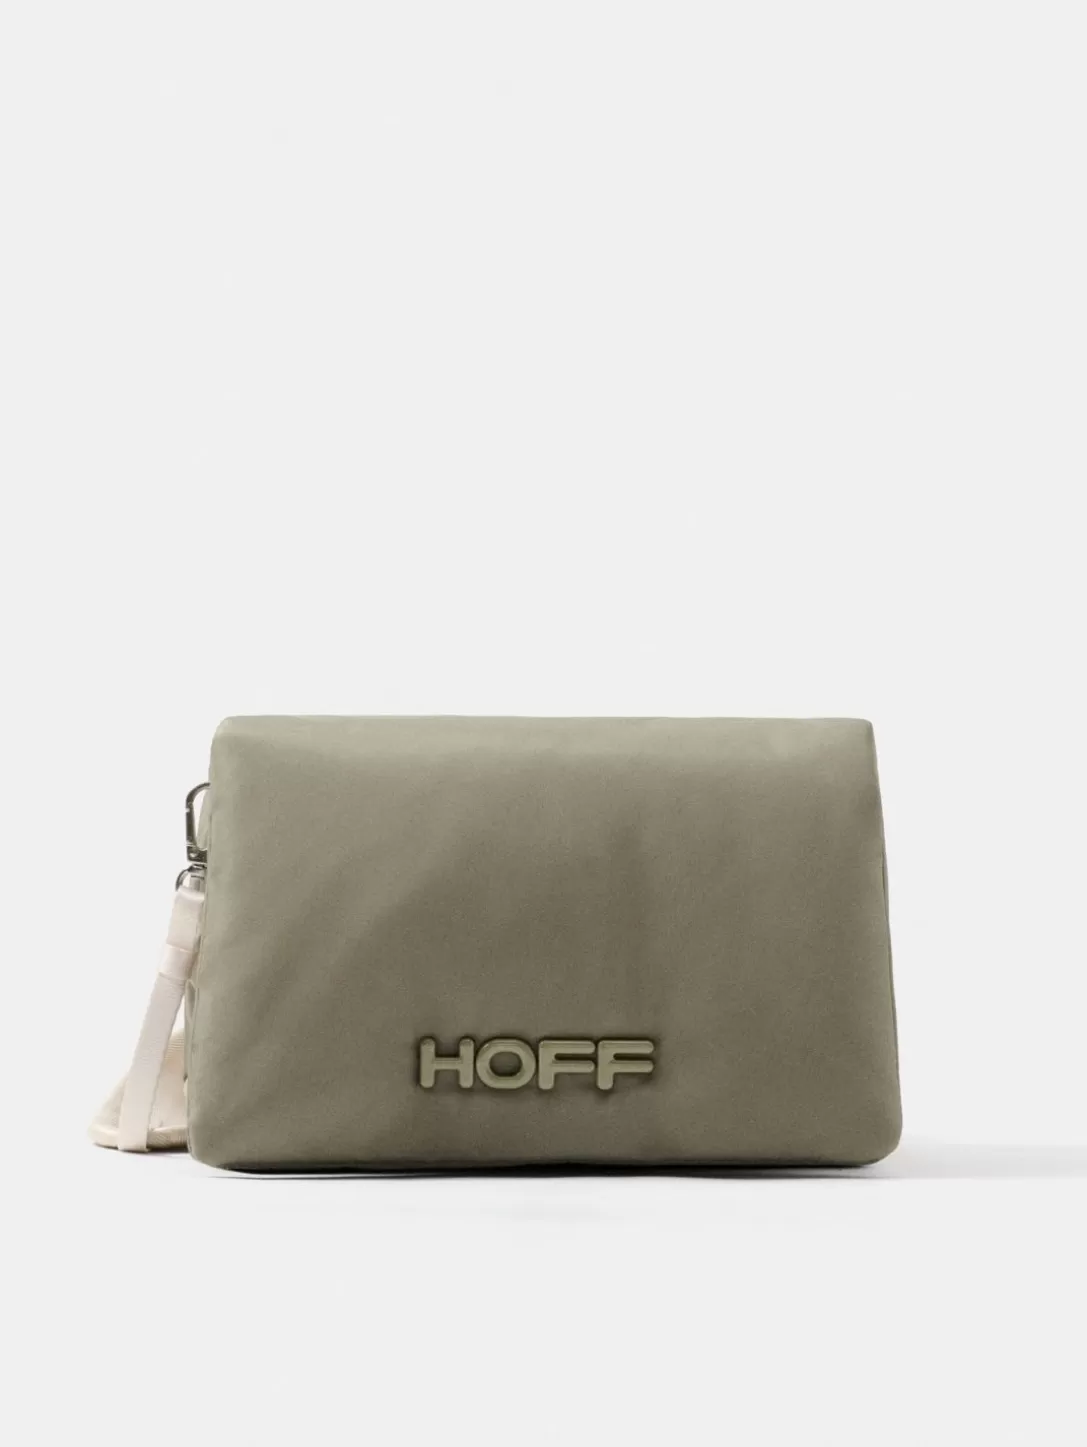 HOFF Nylon Everest Green Shoulder Bag New